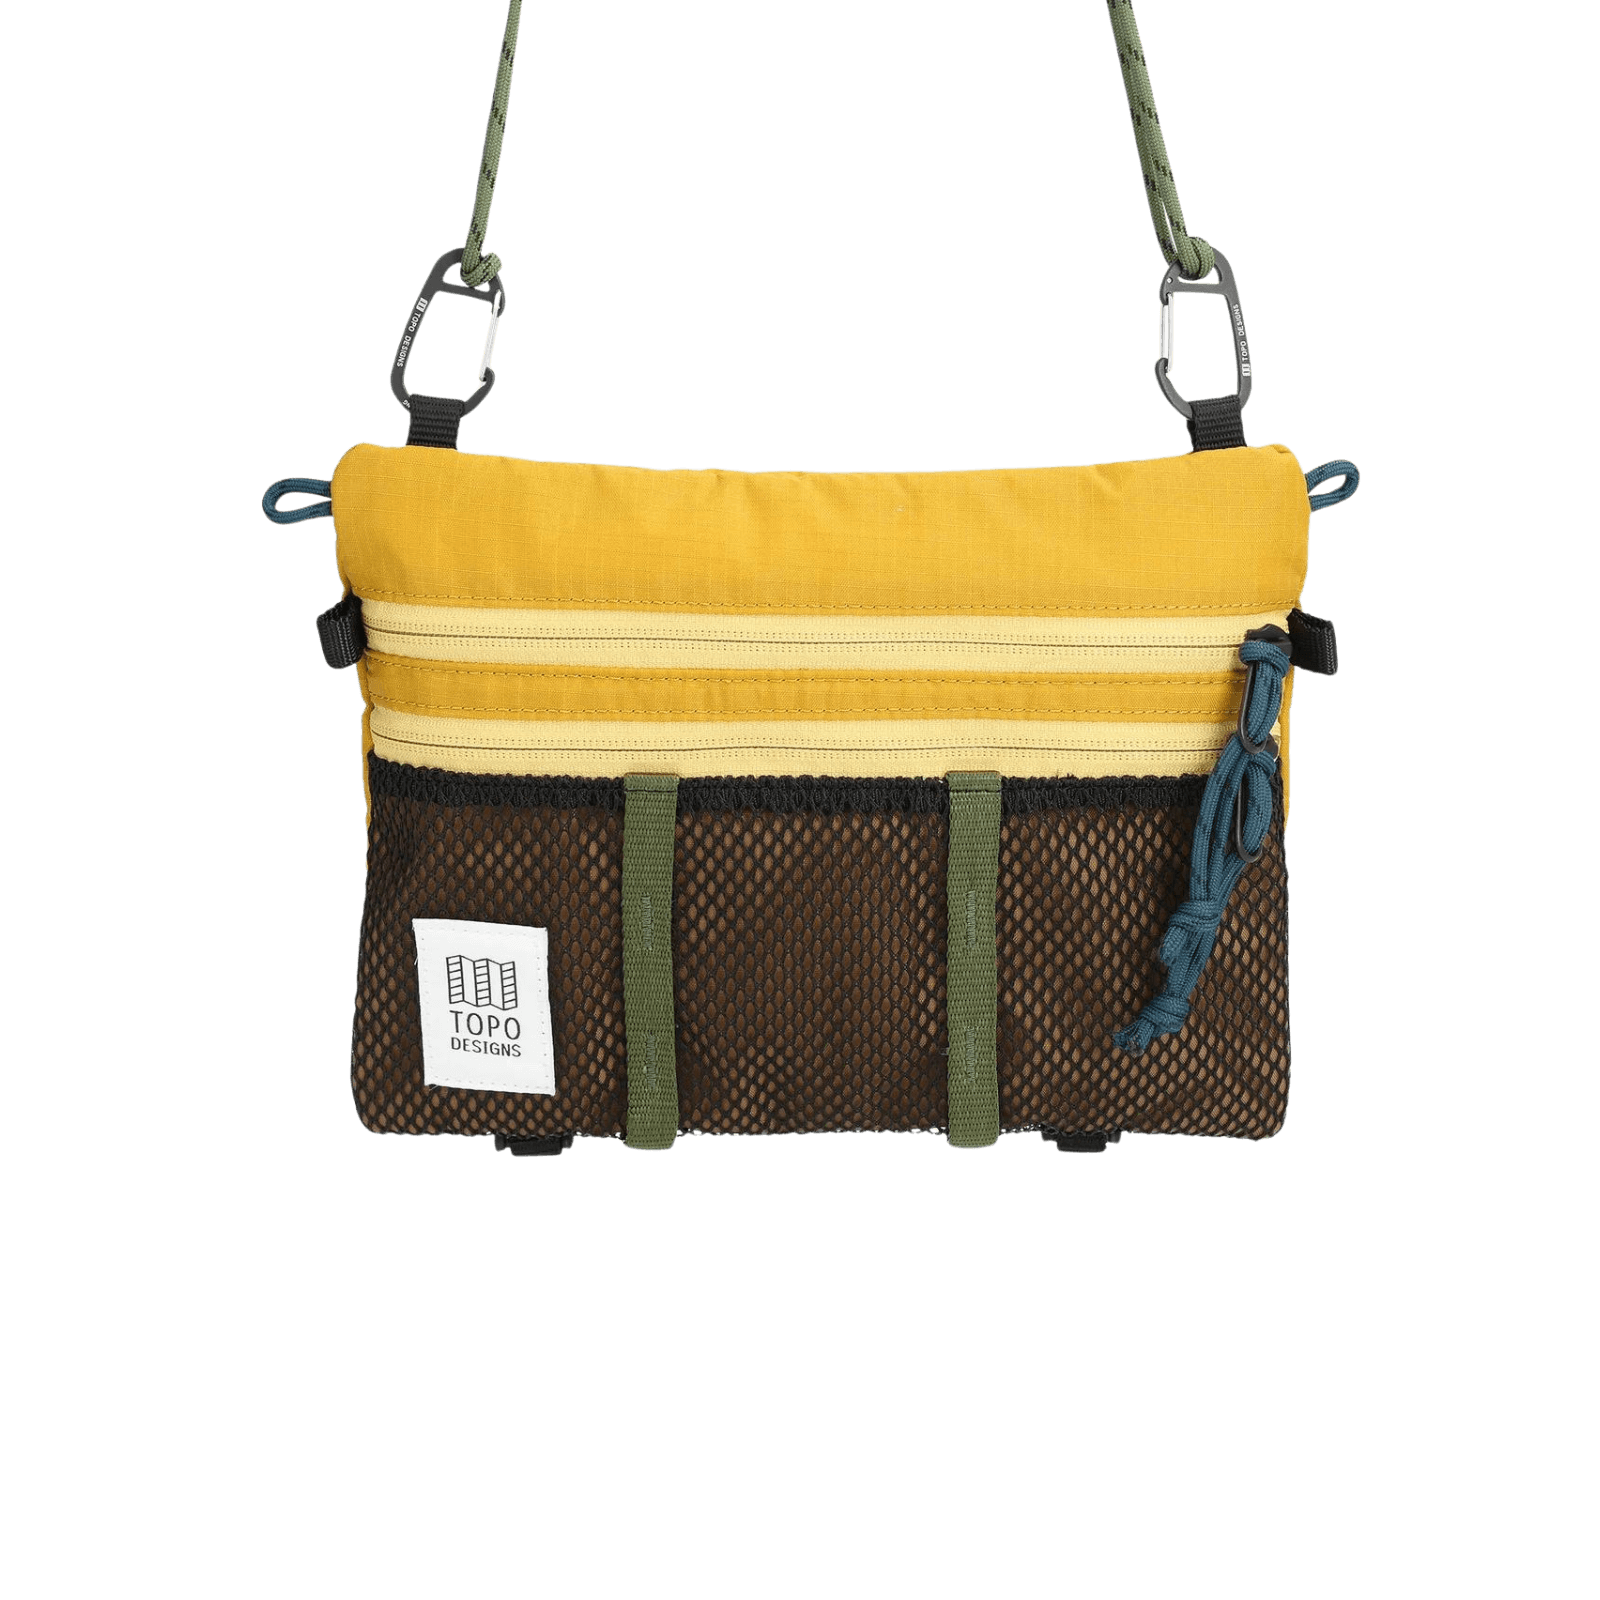 Bandolera Topo Designs Mountain Accesory Shoulder Bag Mustard - ECRU